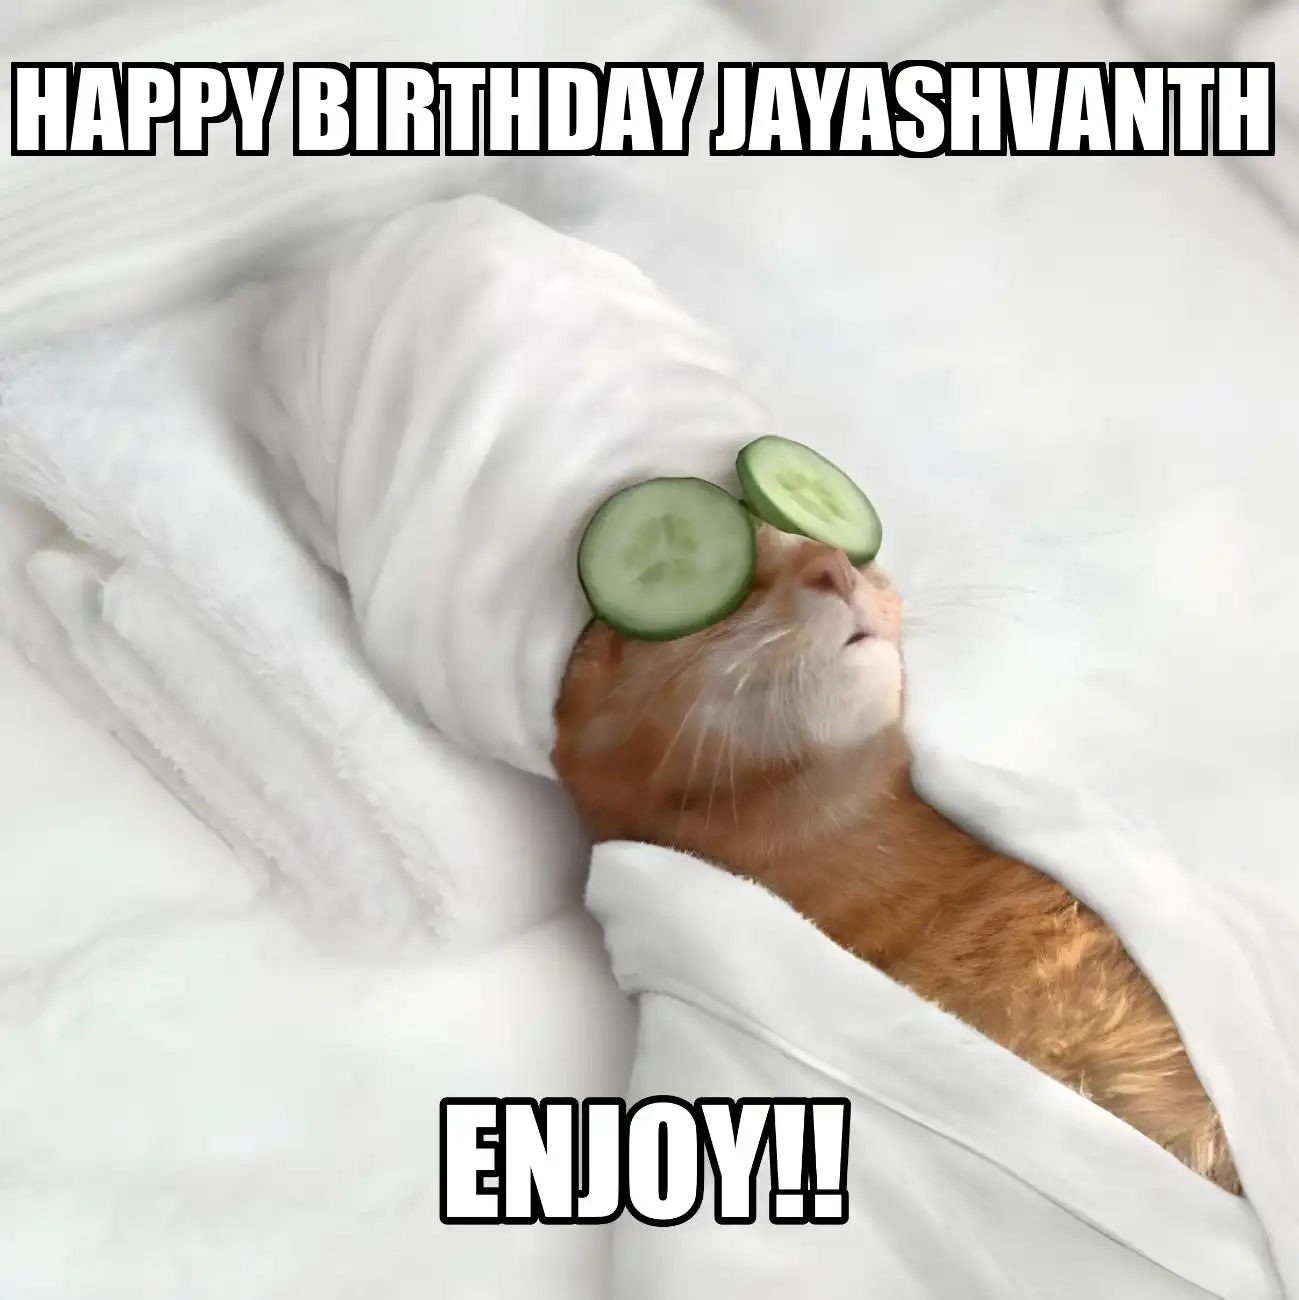 Happy Birthday Jayashvanth Enjoy Cat Meme